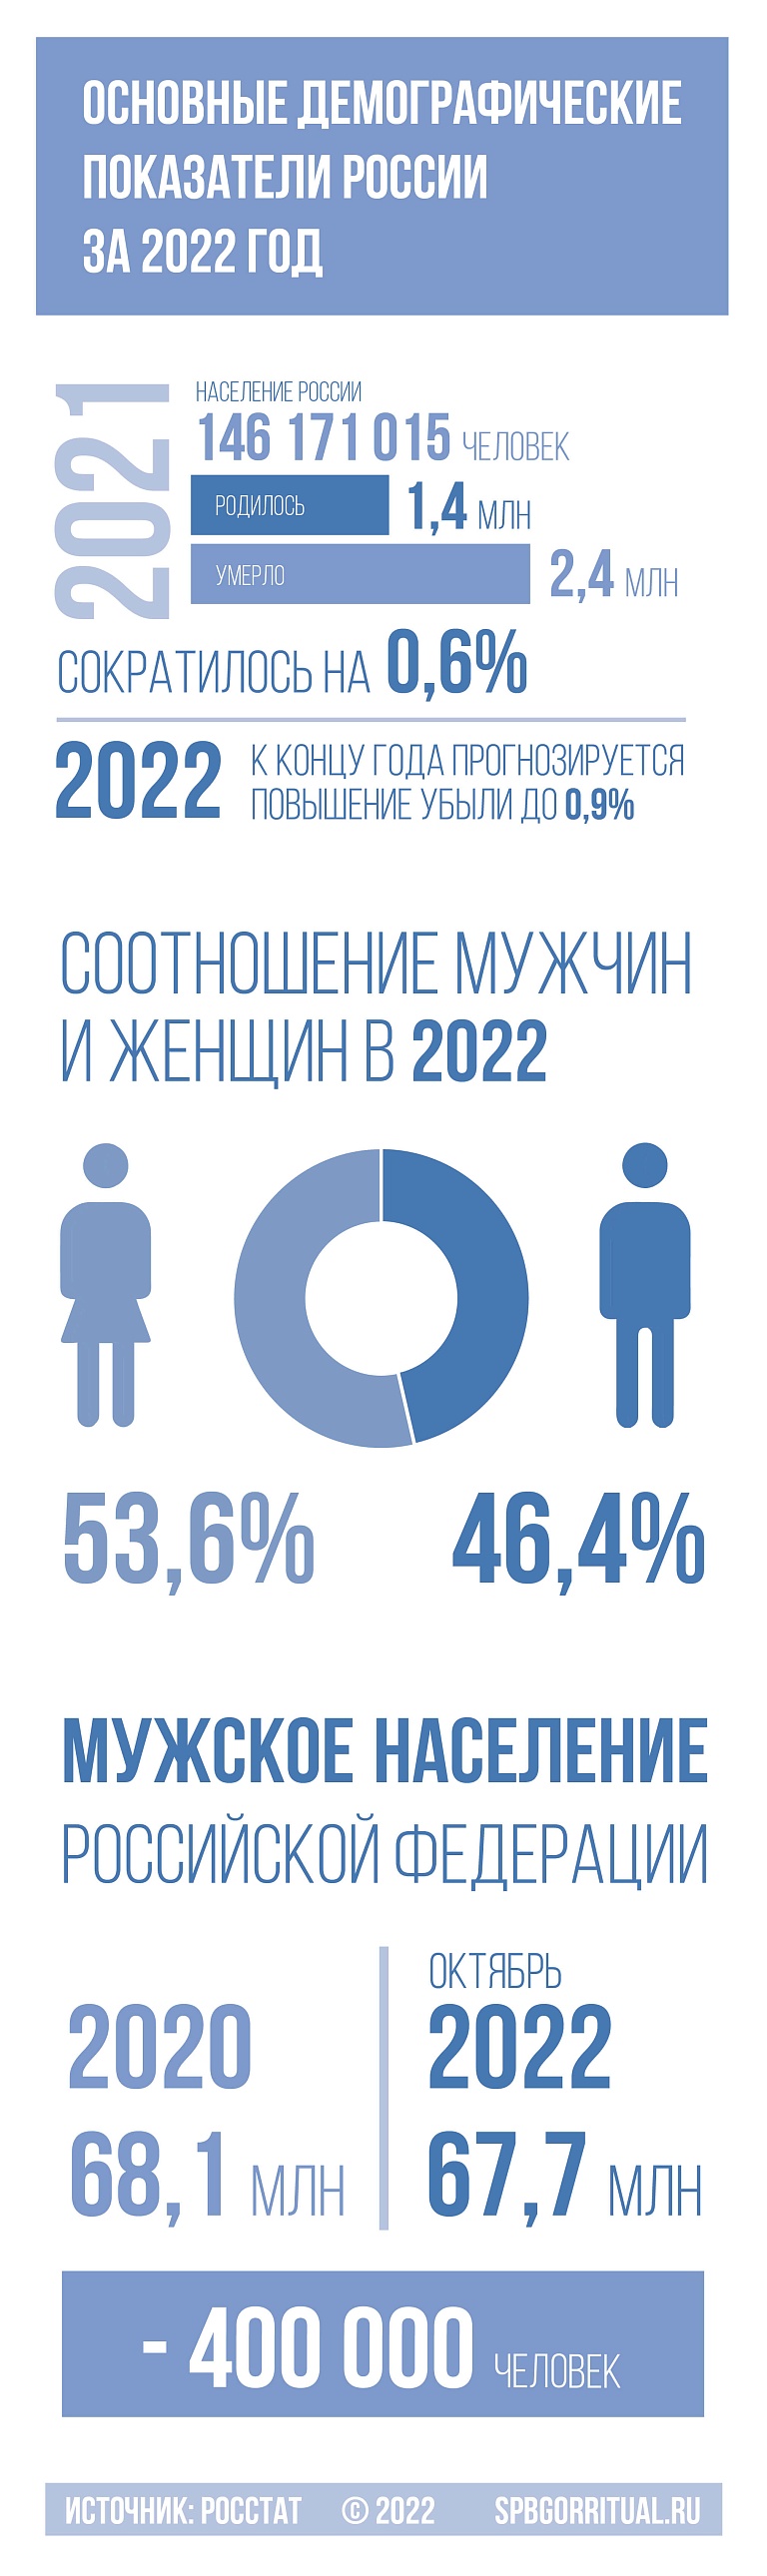 Население России сокращается: мужское население уменьшилось на 400 тыс. человек